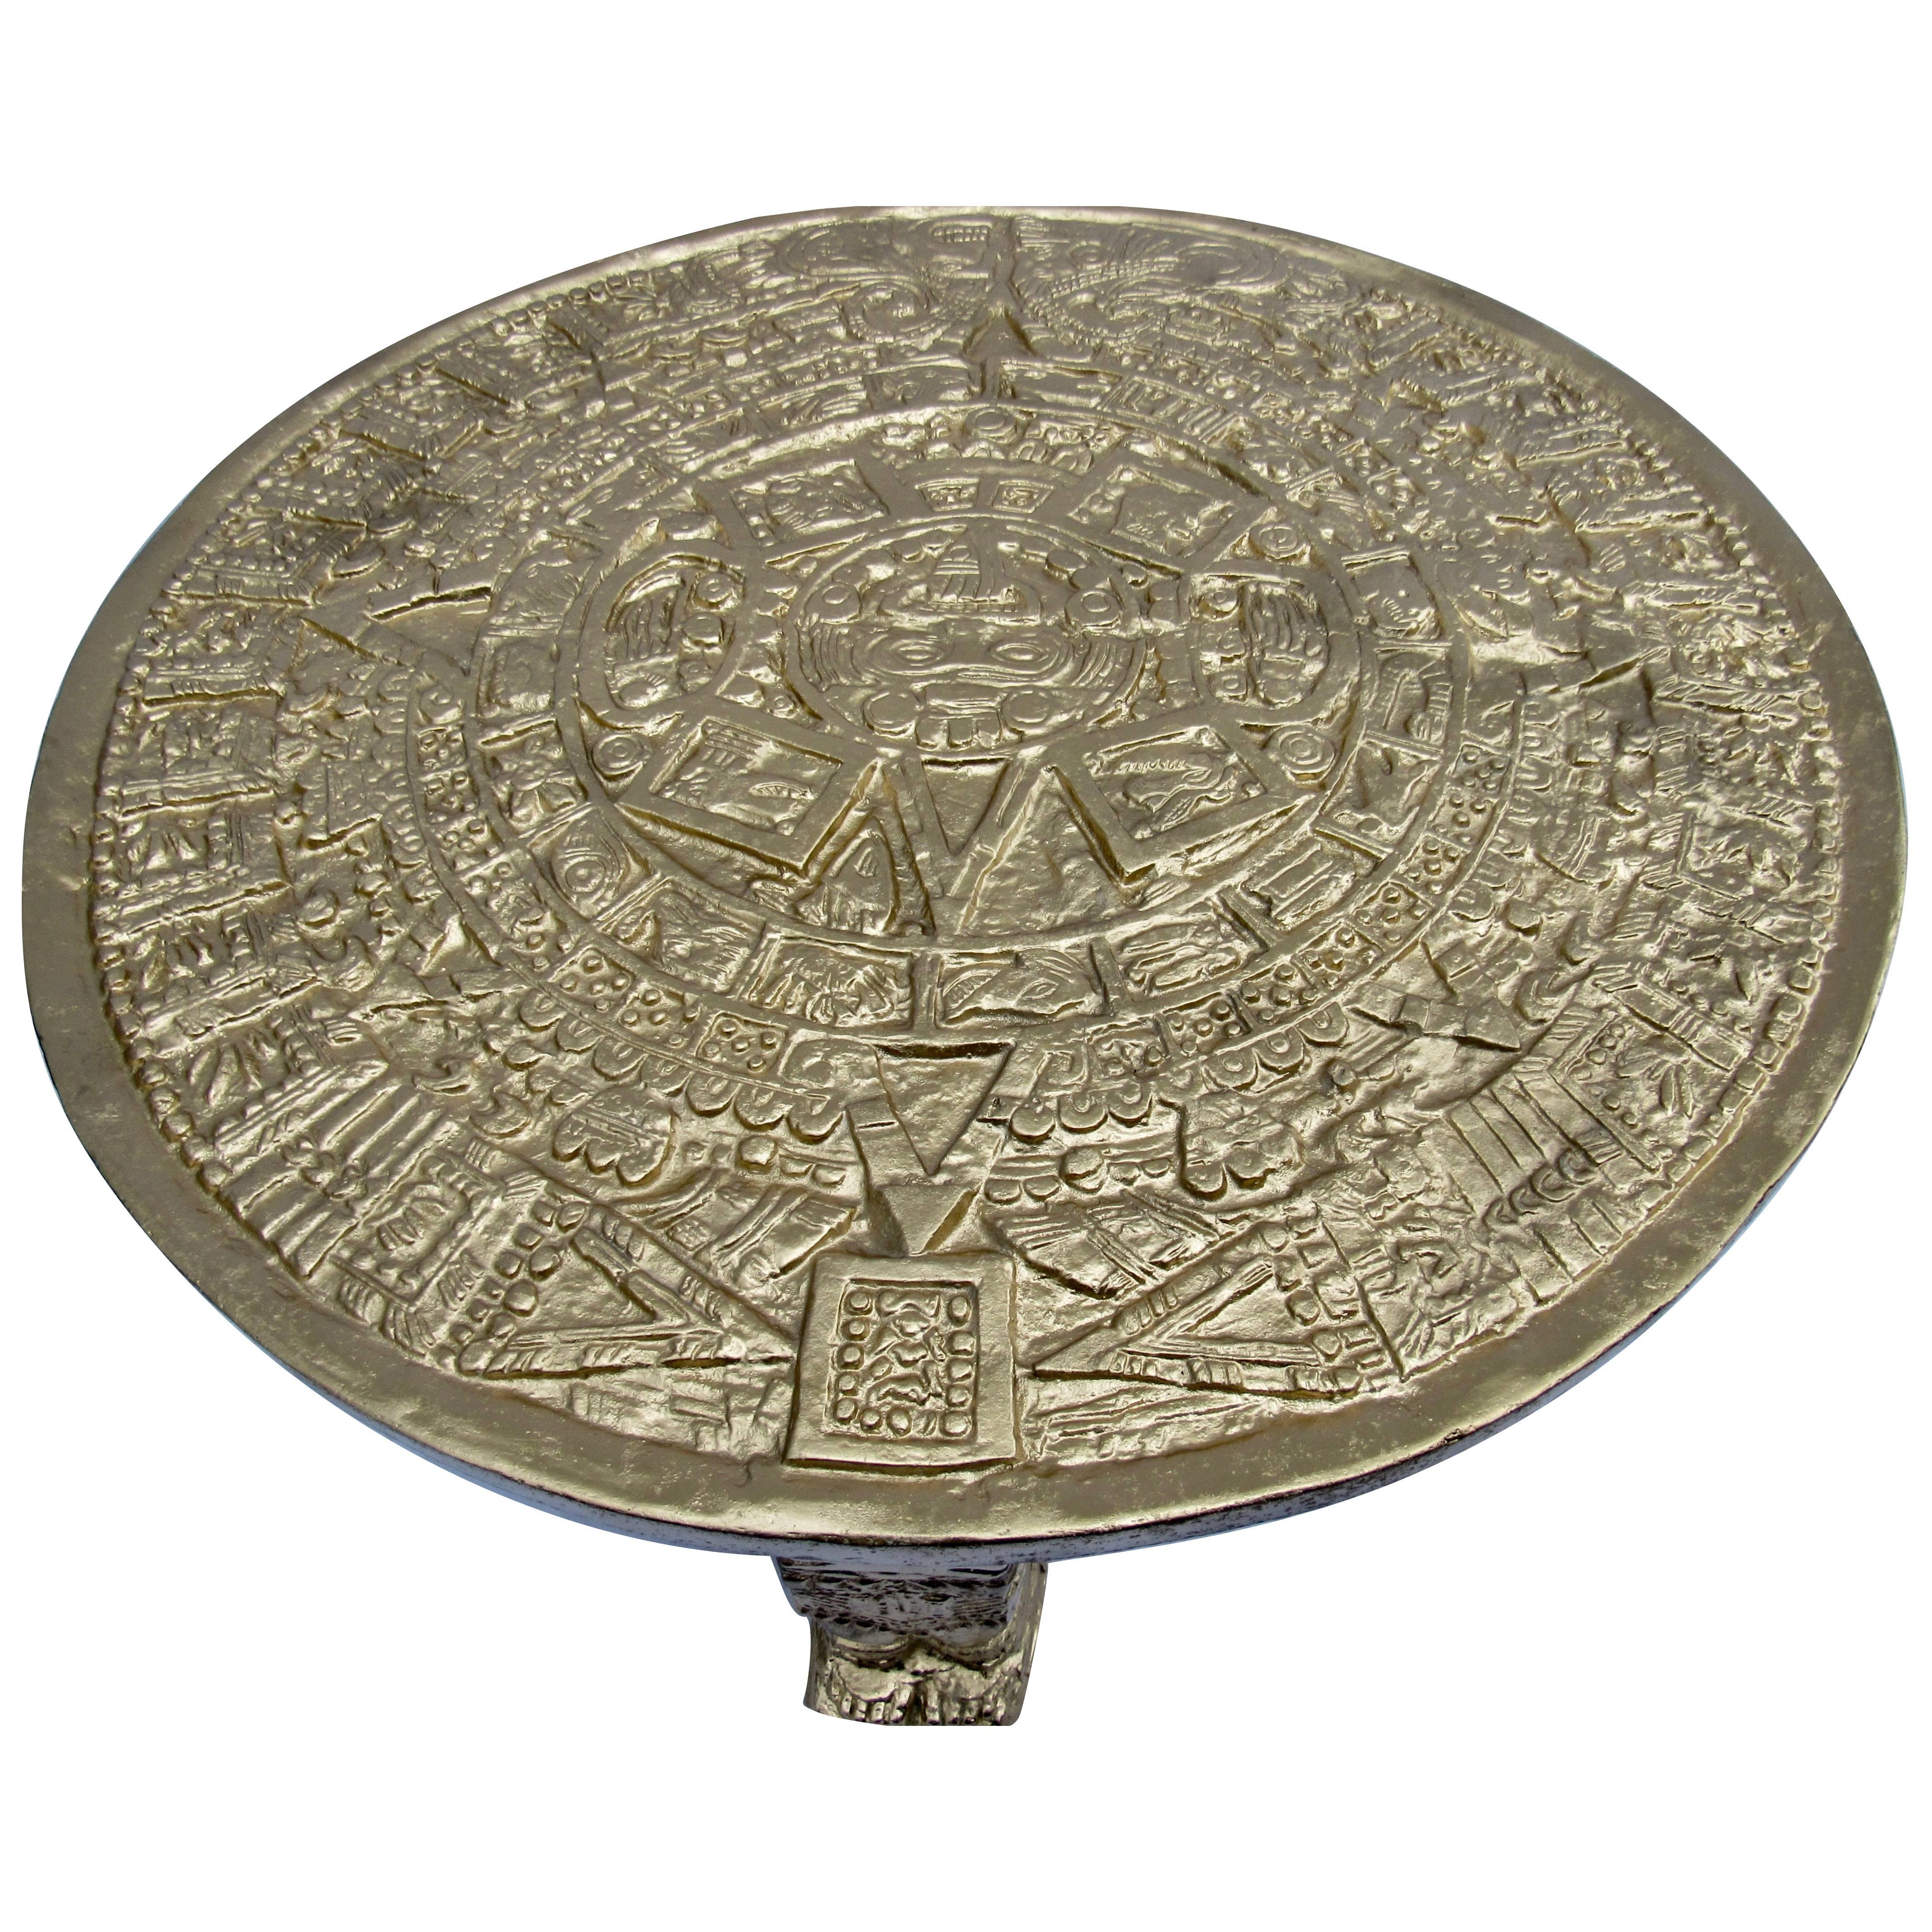 Un calendrier aztèque mexicain des années 1960 en fonte d'aluminium doré repose sur trois sarcophages aztèques en fonte. La base de la table pèse 65 lb.s. et est une interprétation moderniste du calendrier en pierre aztèque classique précolombien.